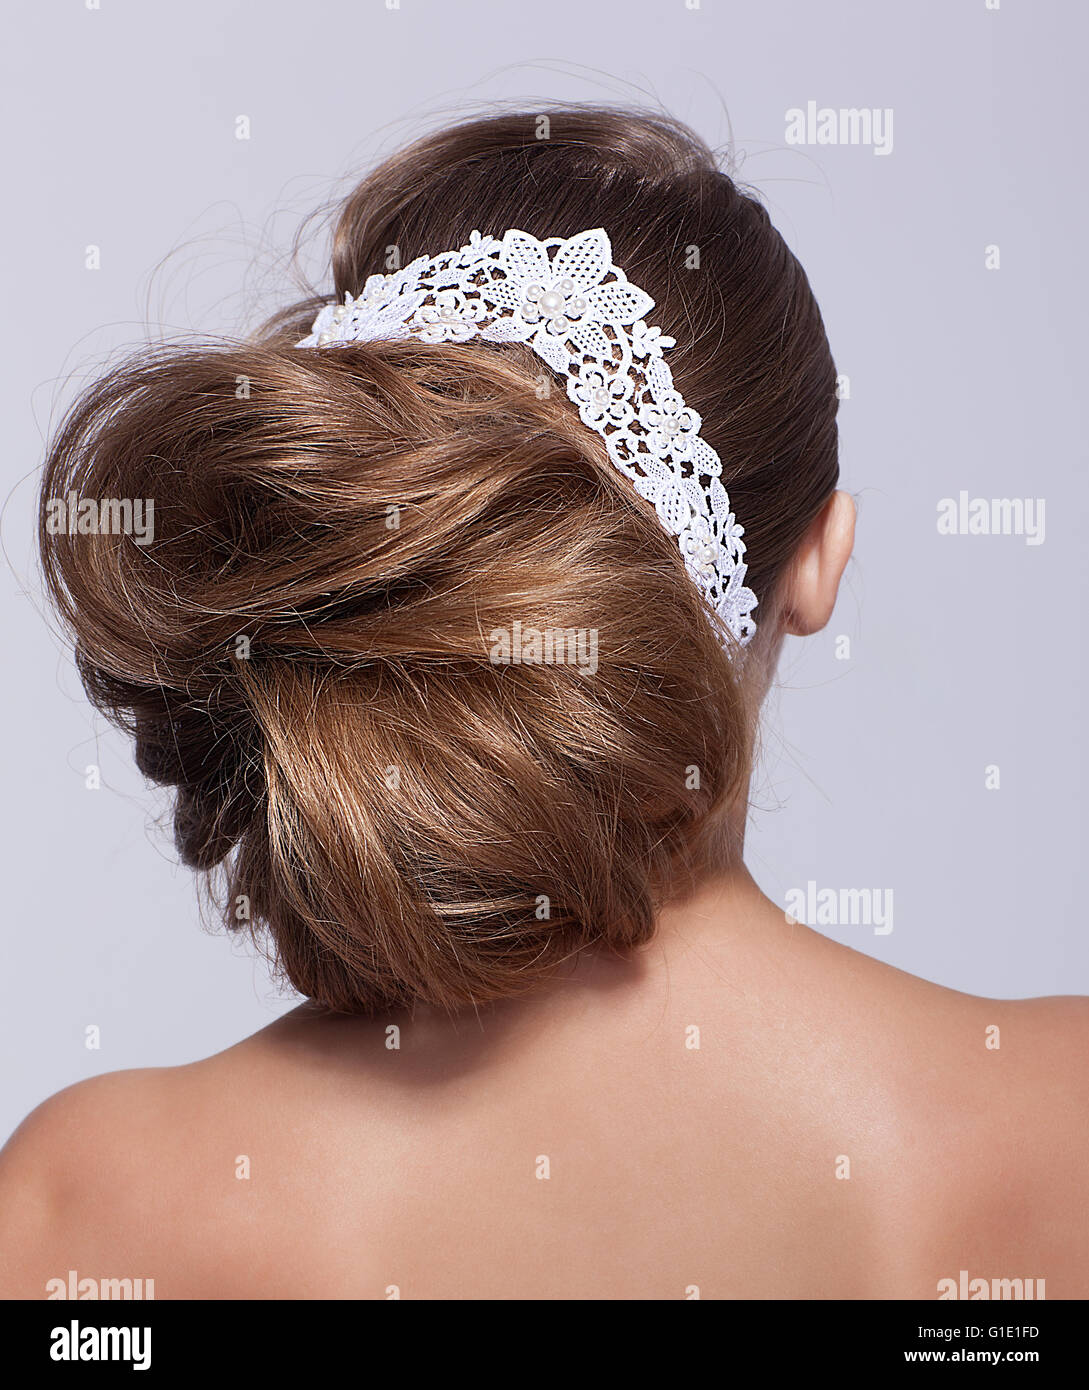 Porträt der schönen jungen Frau auf grauem Hintergrund mit lacy weiße Schleife in die Haare von hinten Stockfoto